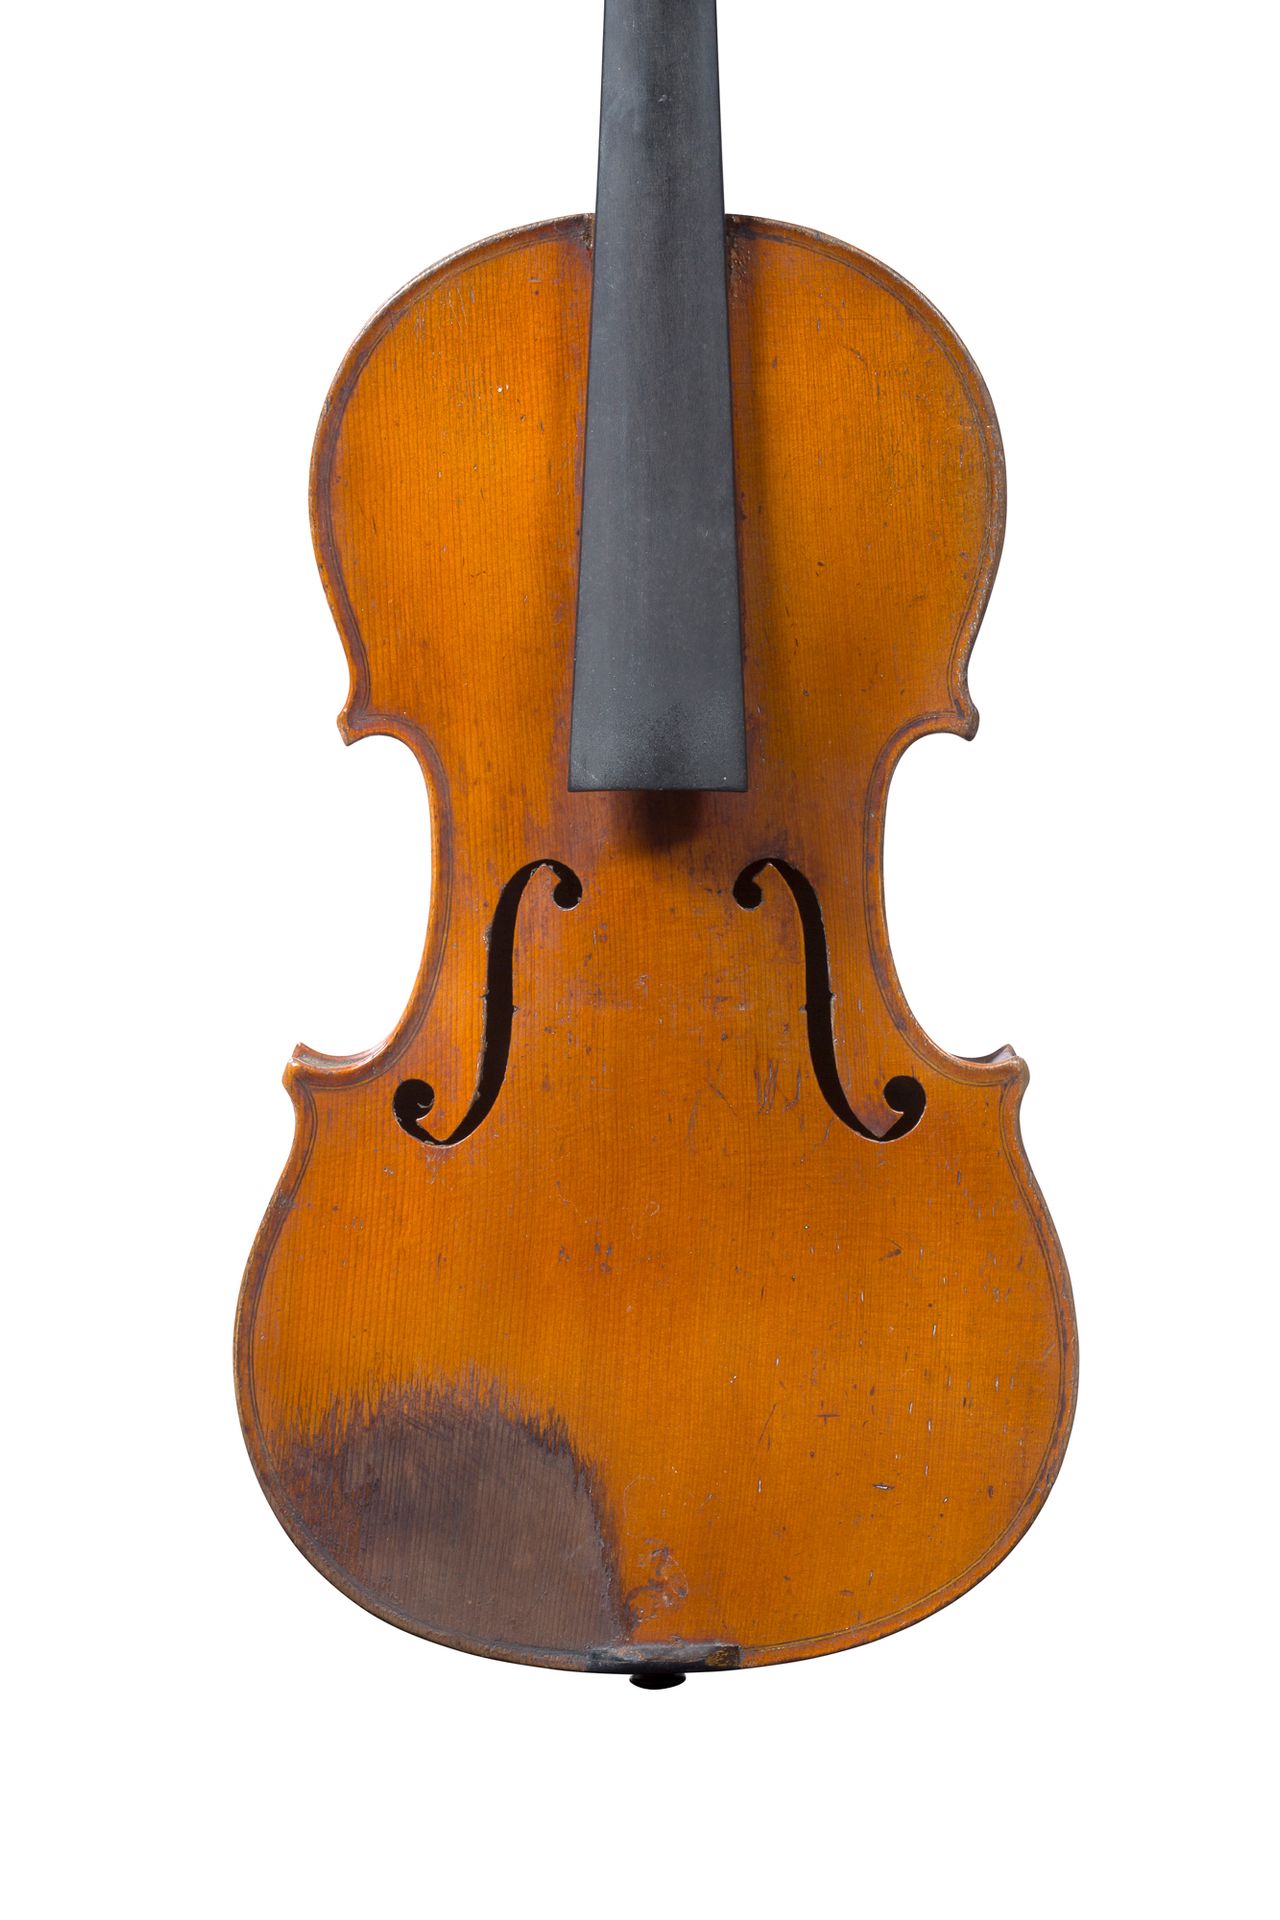 Null Geige, hergestellt in Mirecourt um 1780.
Entourage von François Breton.
Sta&hellip;